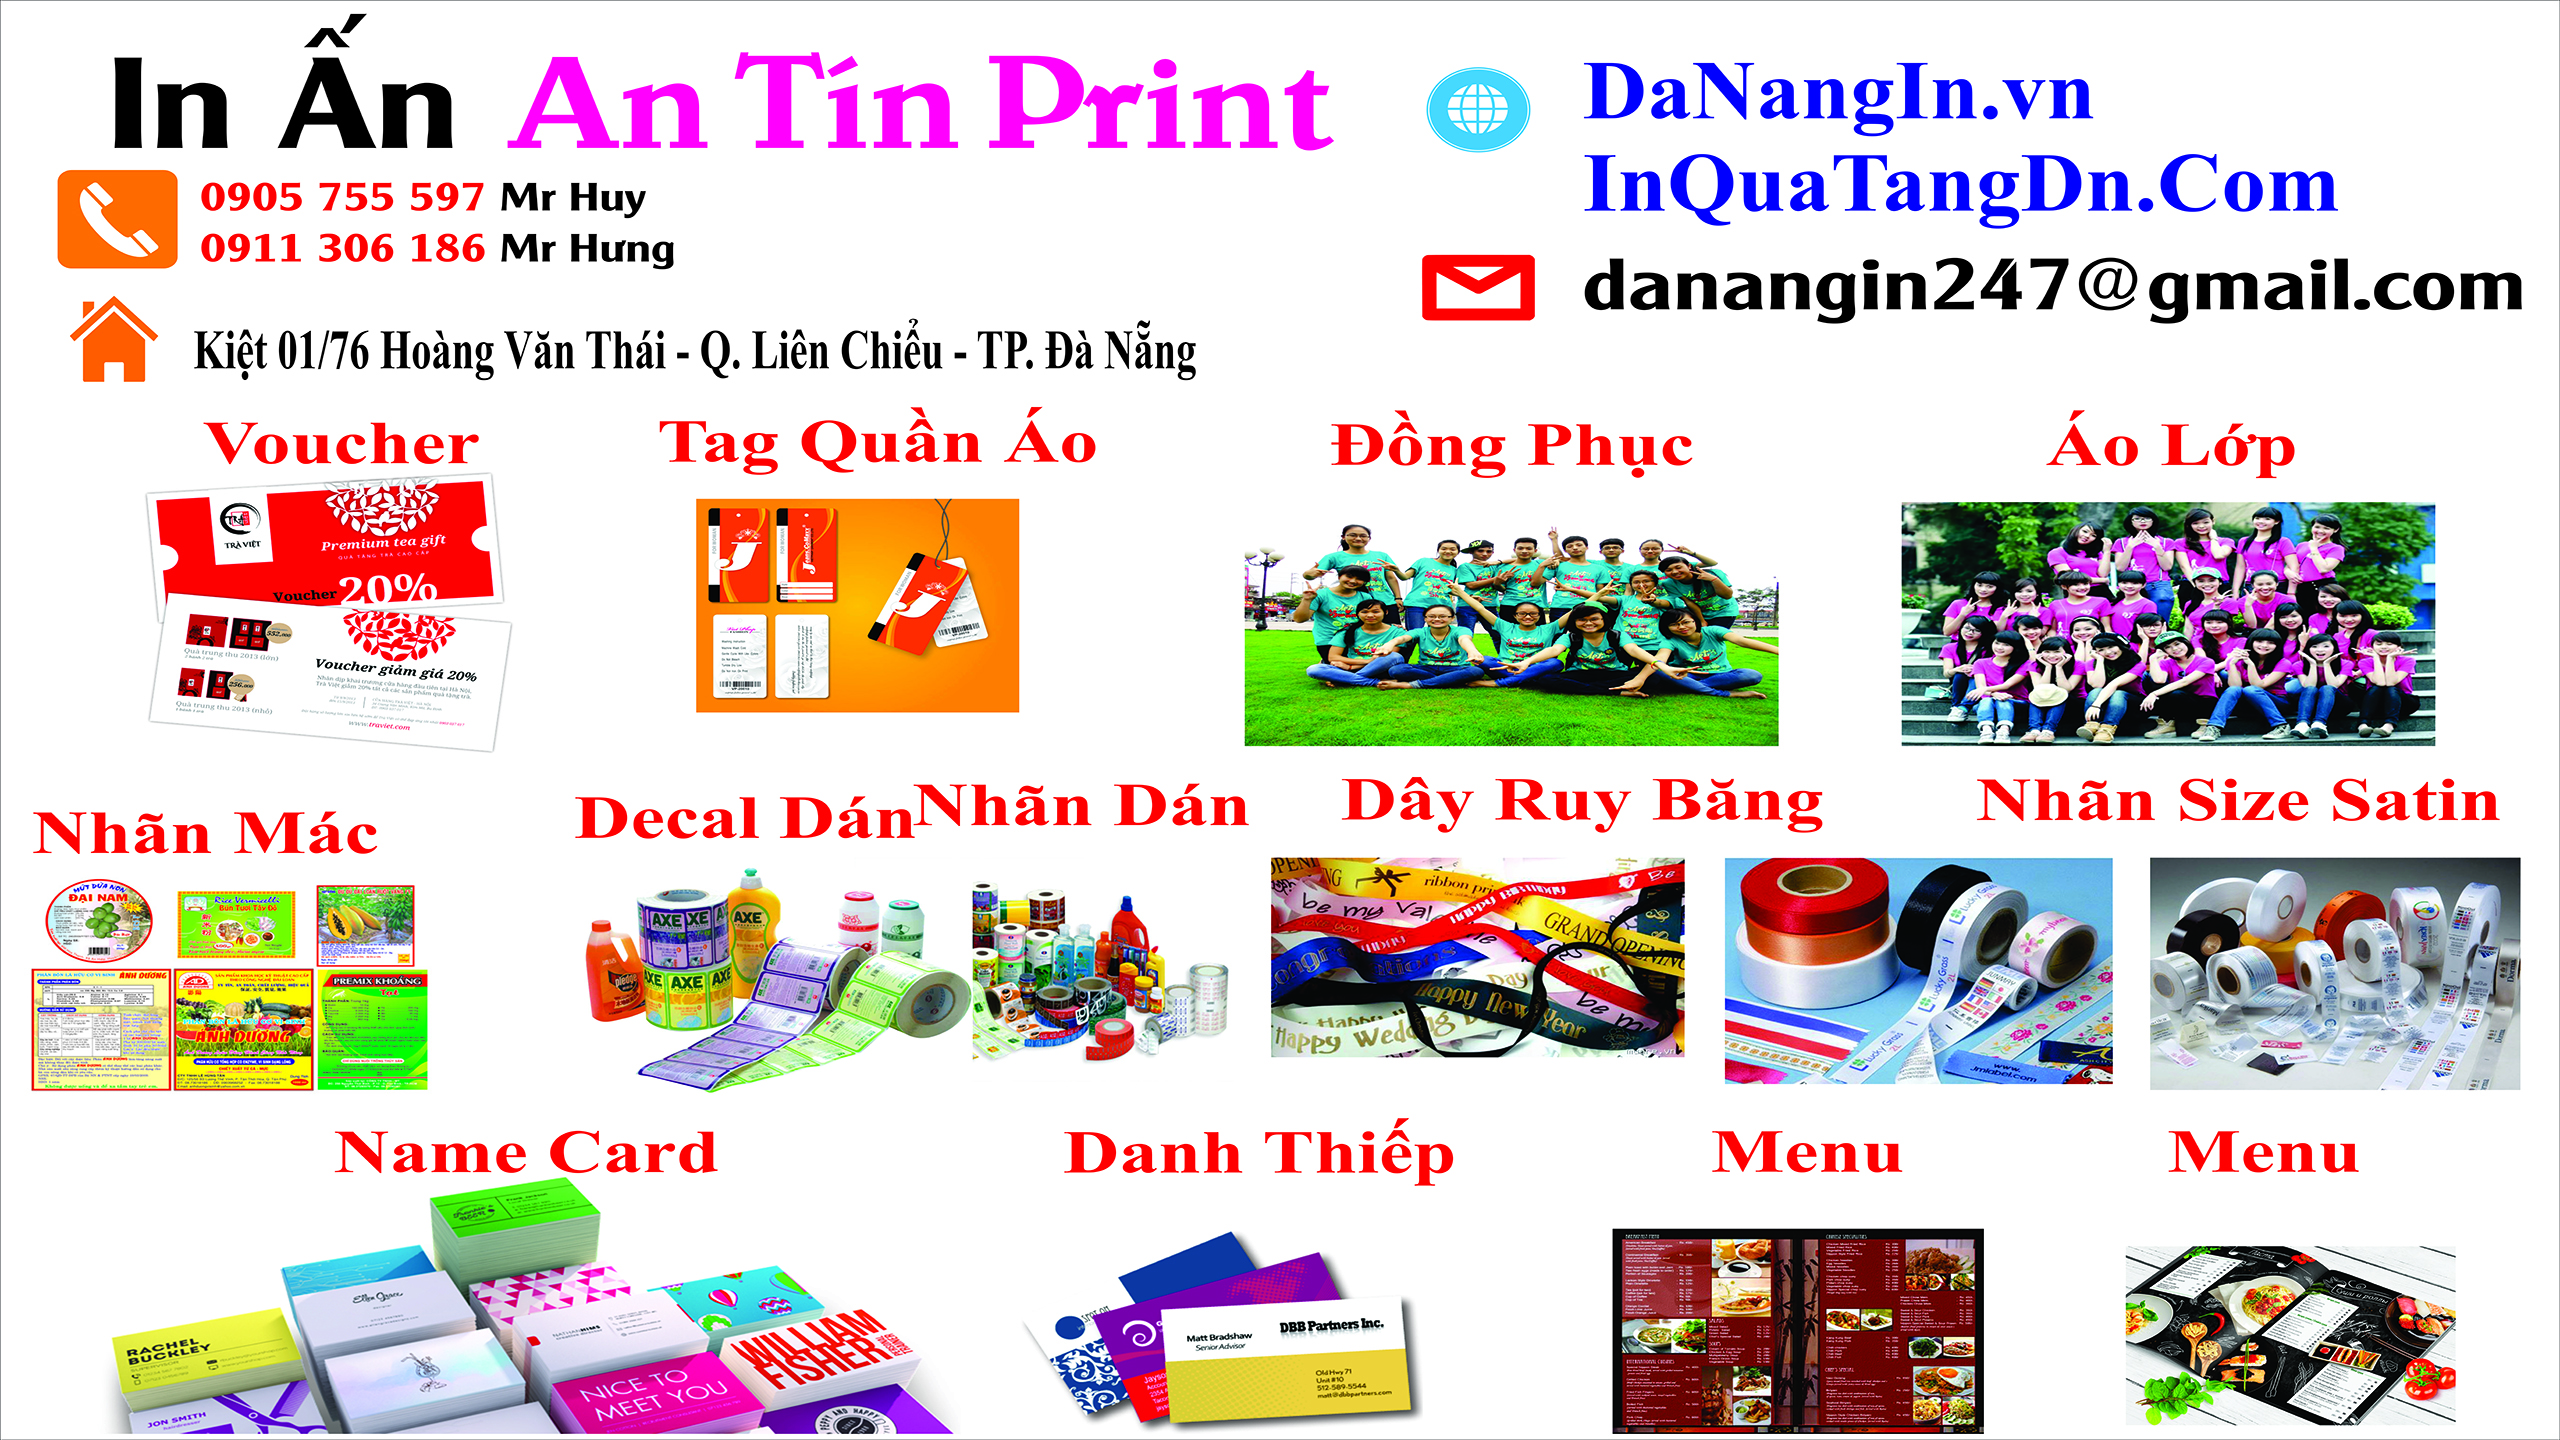 in name card đà nẵng 0905 755 597 A Huy - danangin.vn